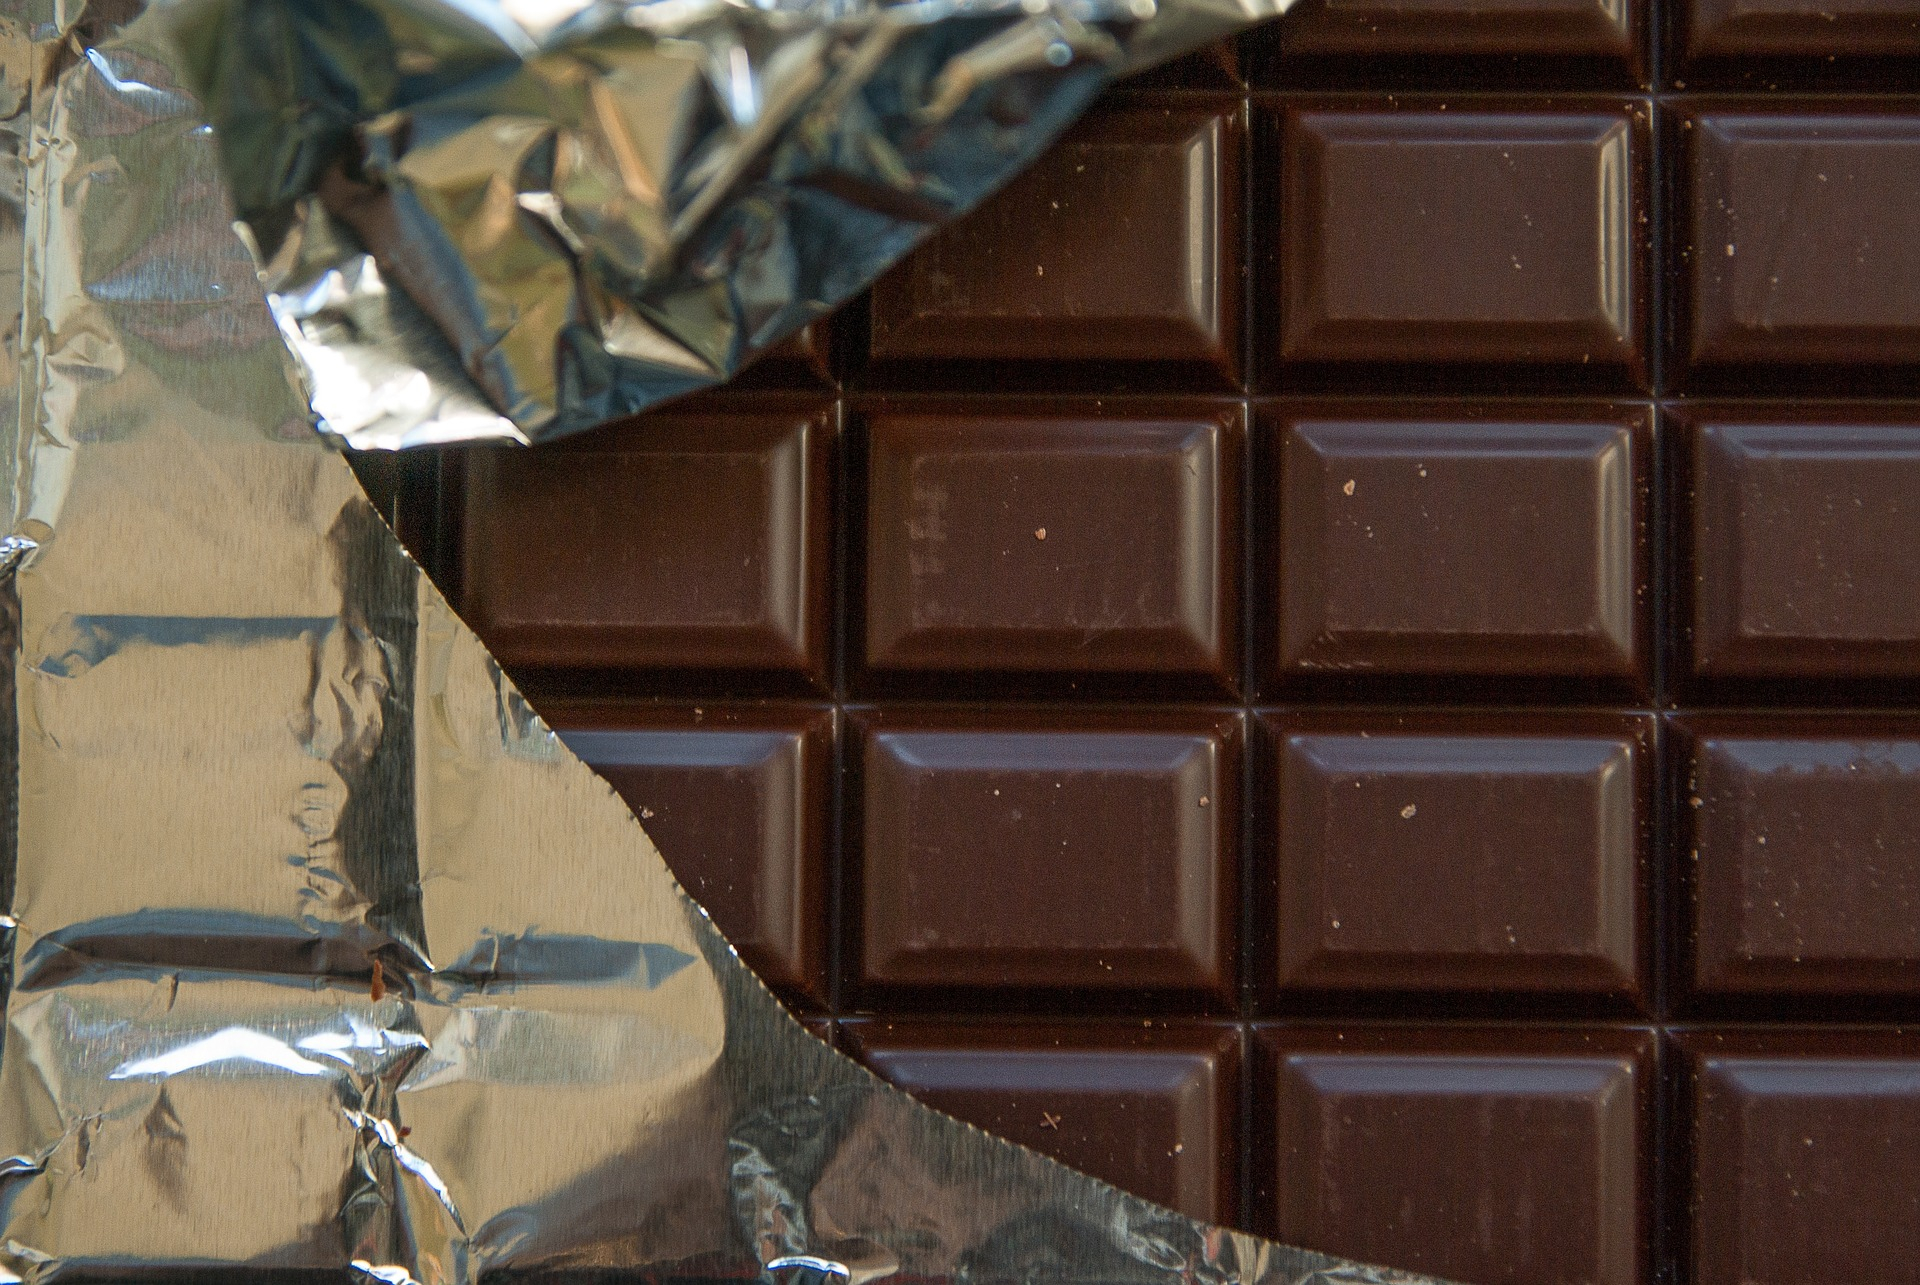 Росконтроль назвал самый вкусный шоколад